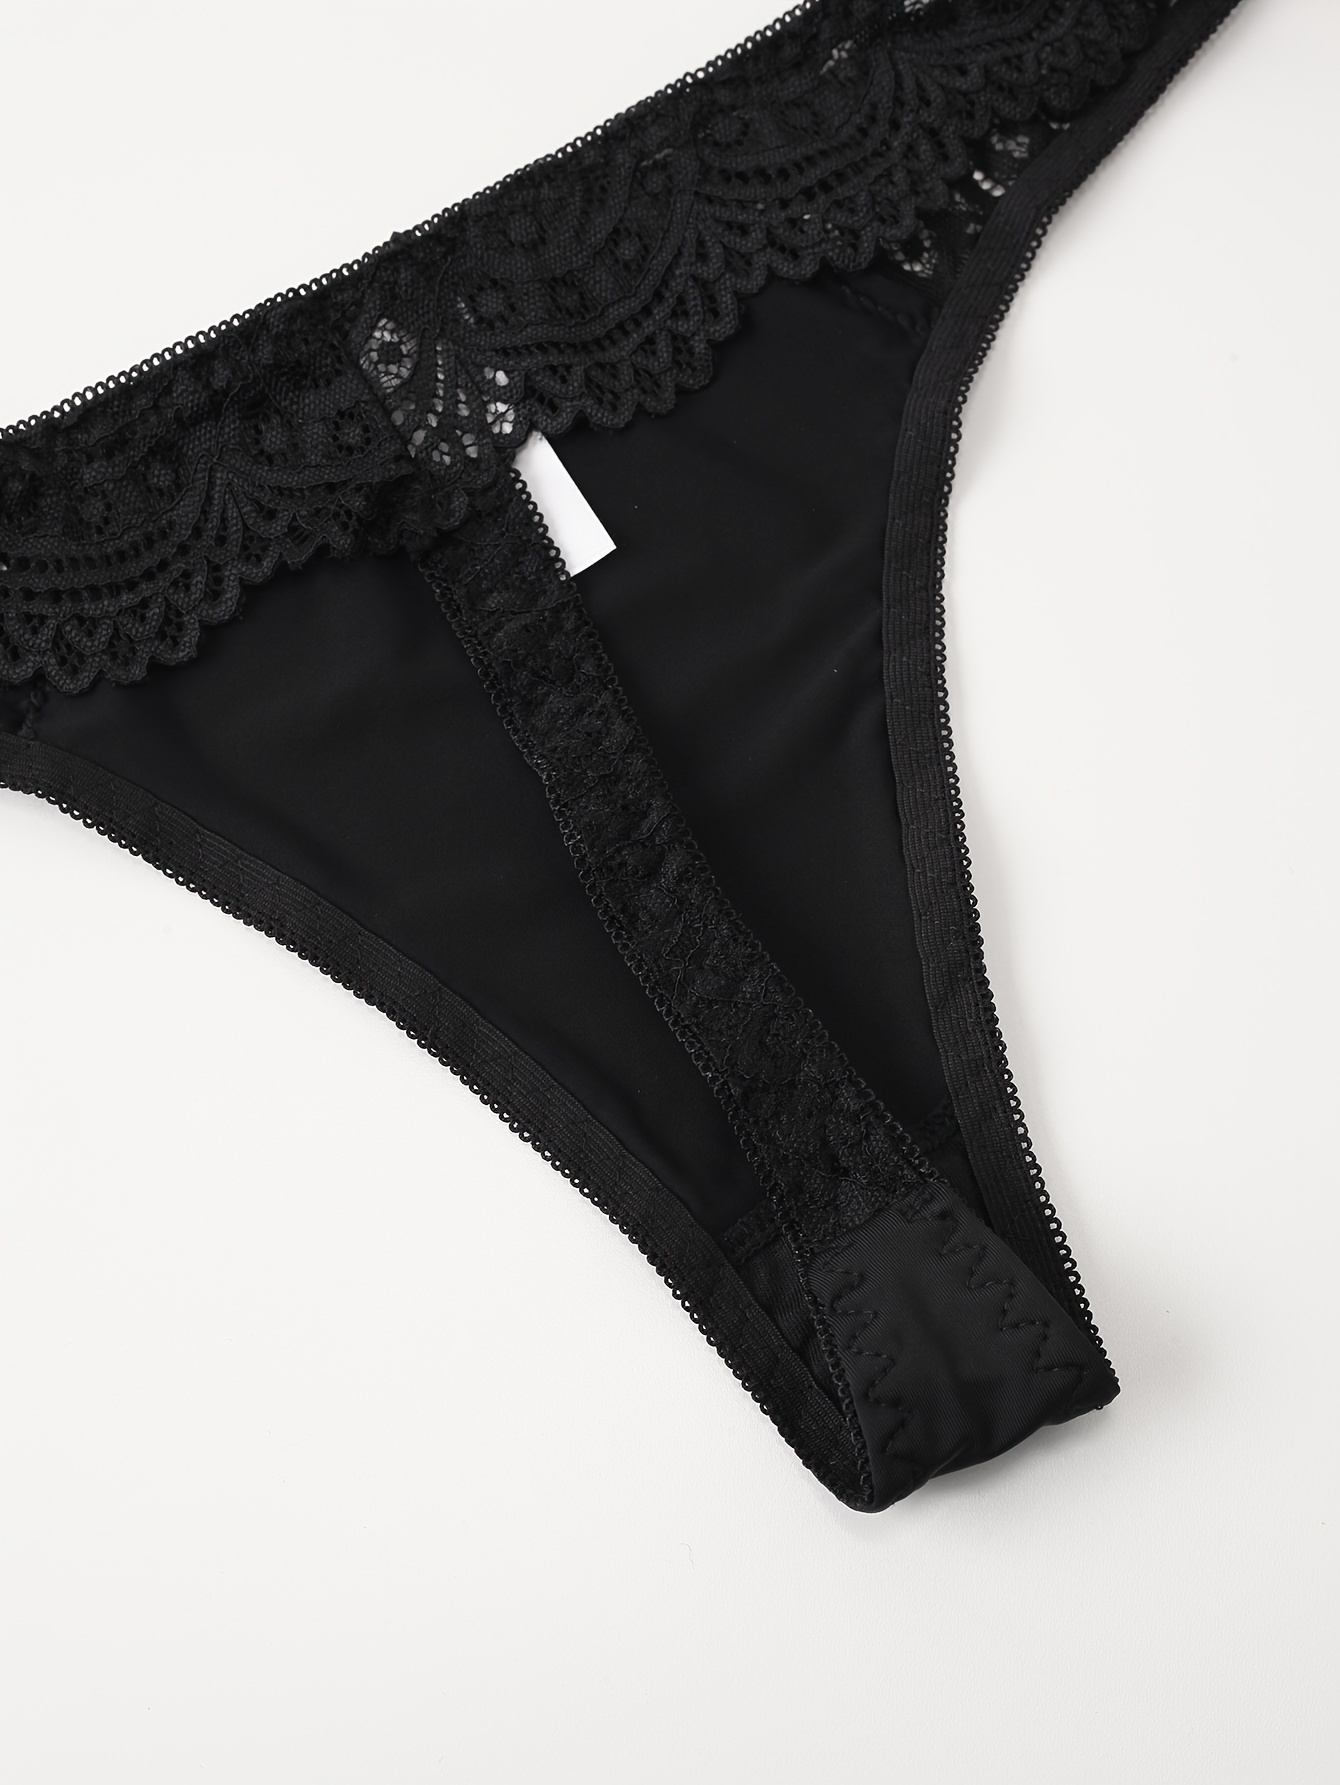 Contrast Lace Bra & Panties, Cut Out Push Up Bra & Elastic Thong Lingerie  Set, Women's Lingerie & Underwear